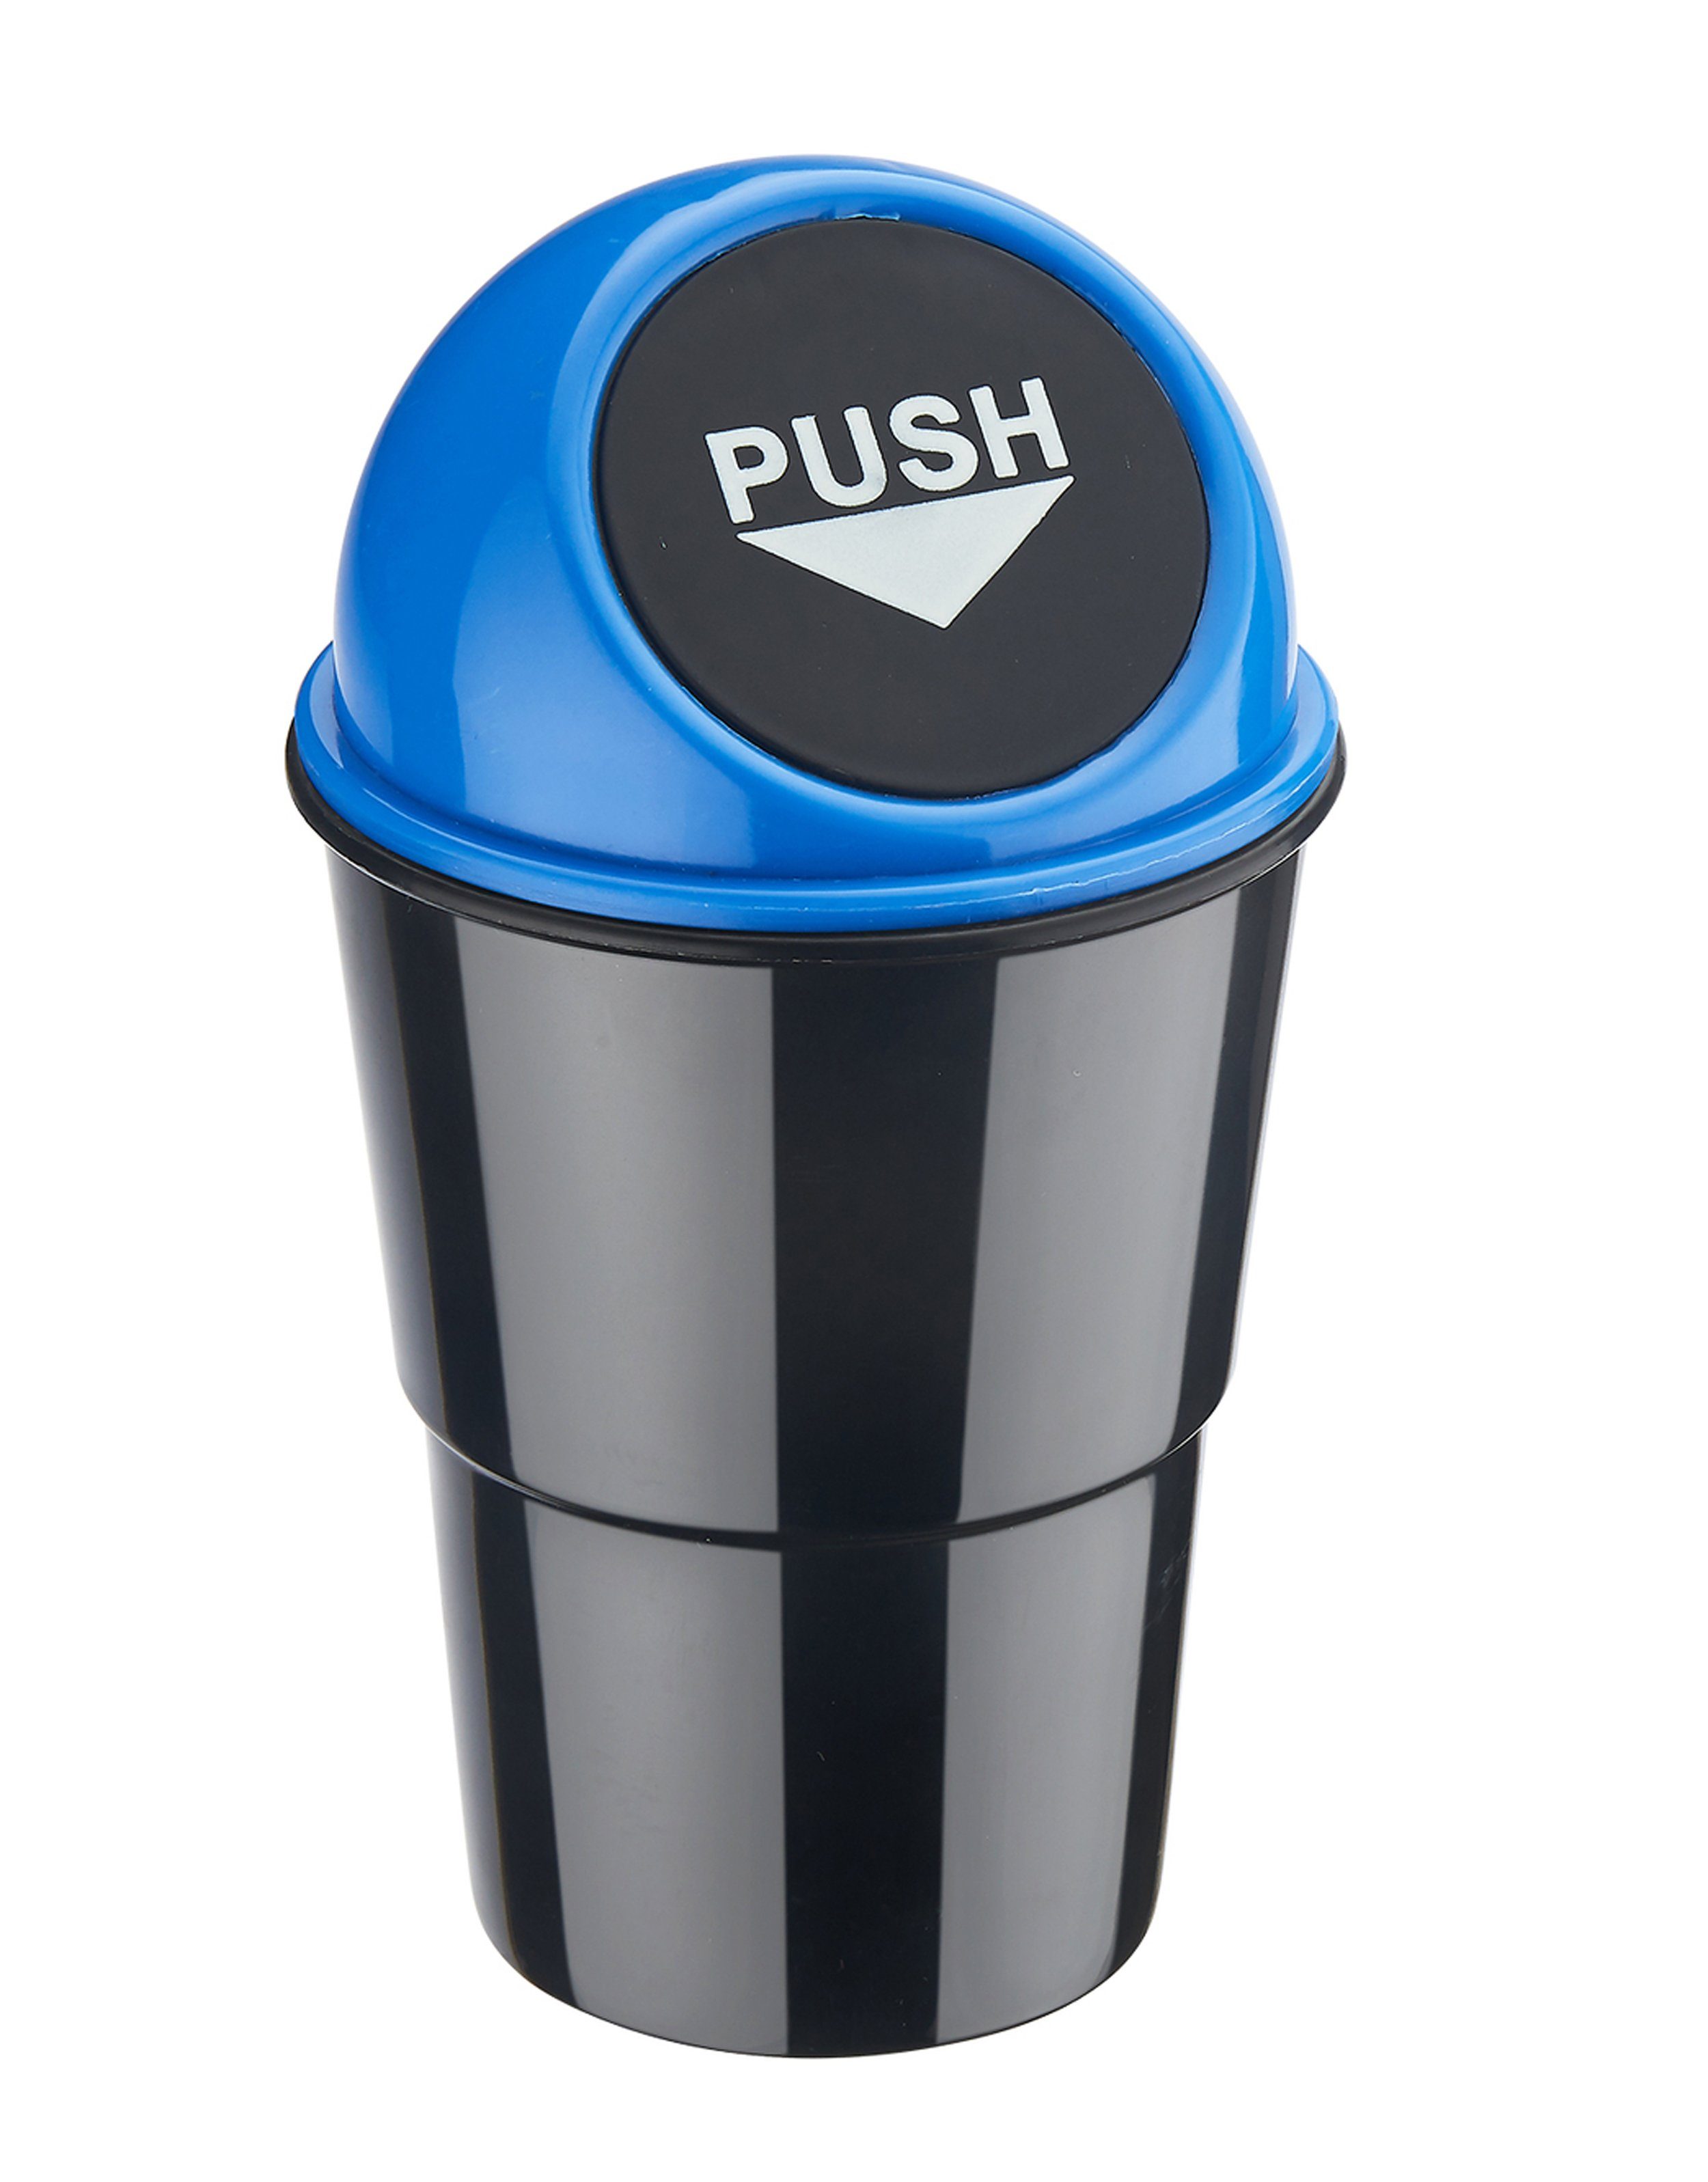 CHAMP Mülleimer Mini MÜLLEIMER für Auto mit Push-Deckel Getränkehalterung Automülleimer PKW KFZ Abfalleimer 1 (Blau) | Mülleimer